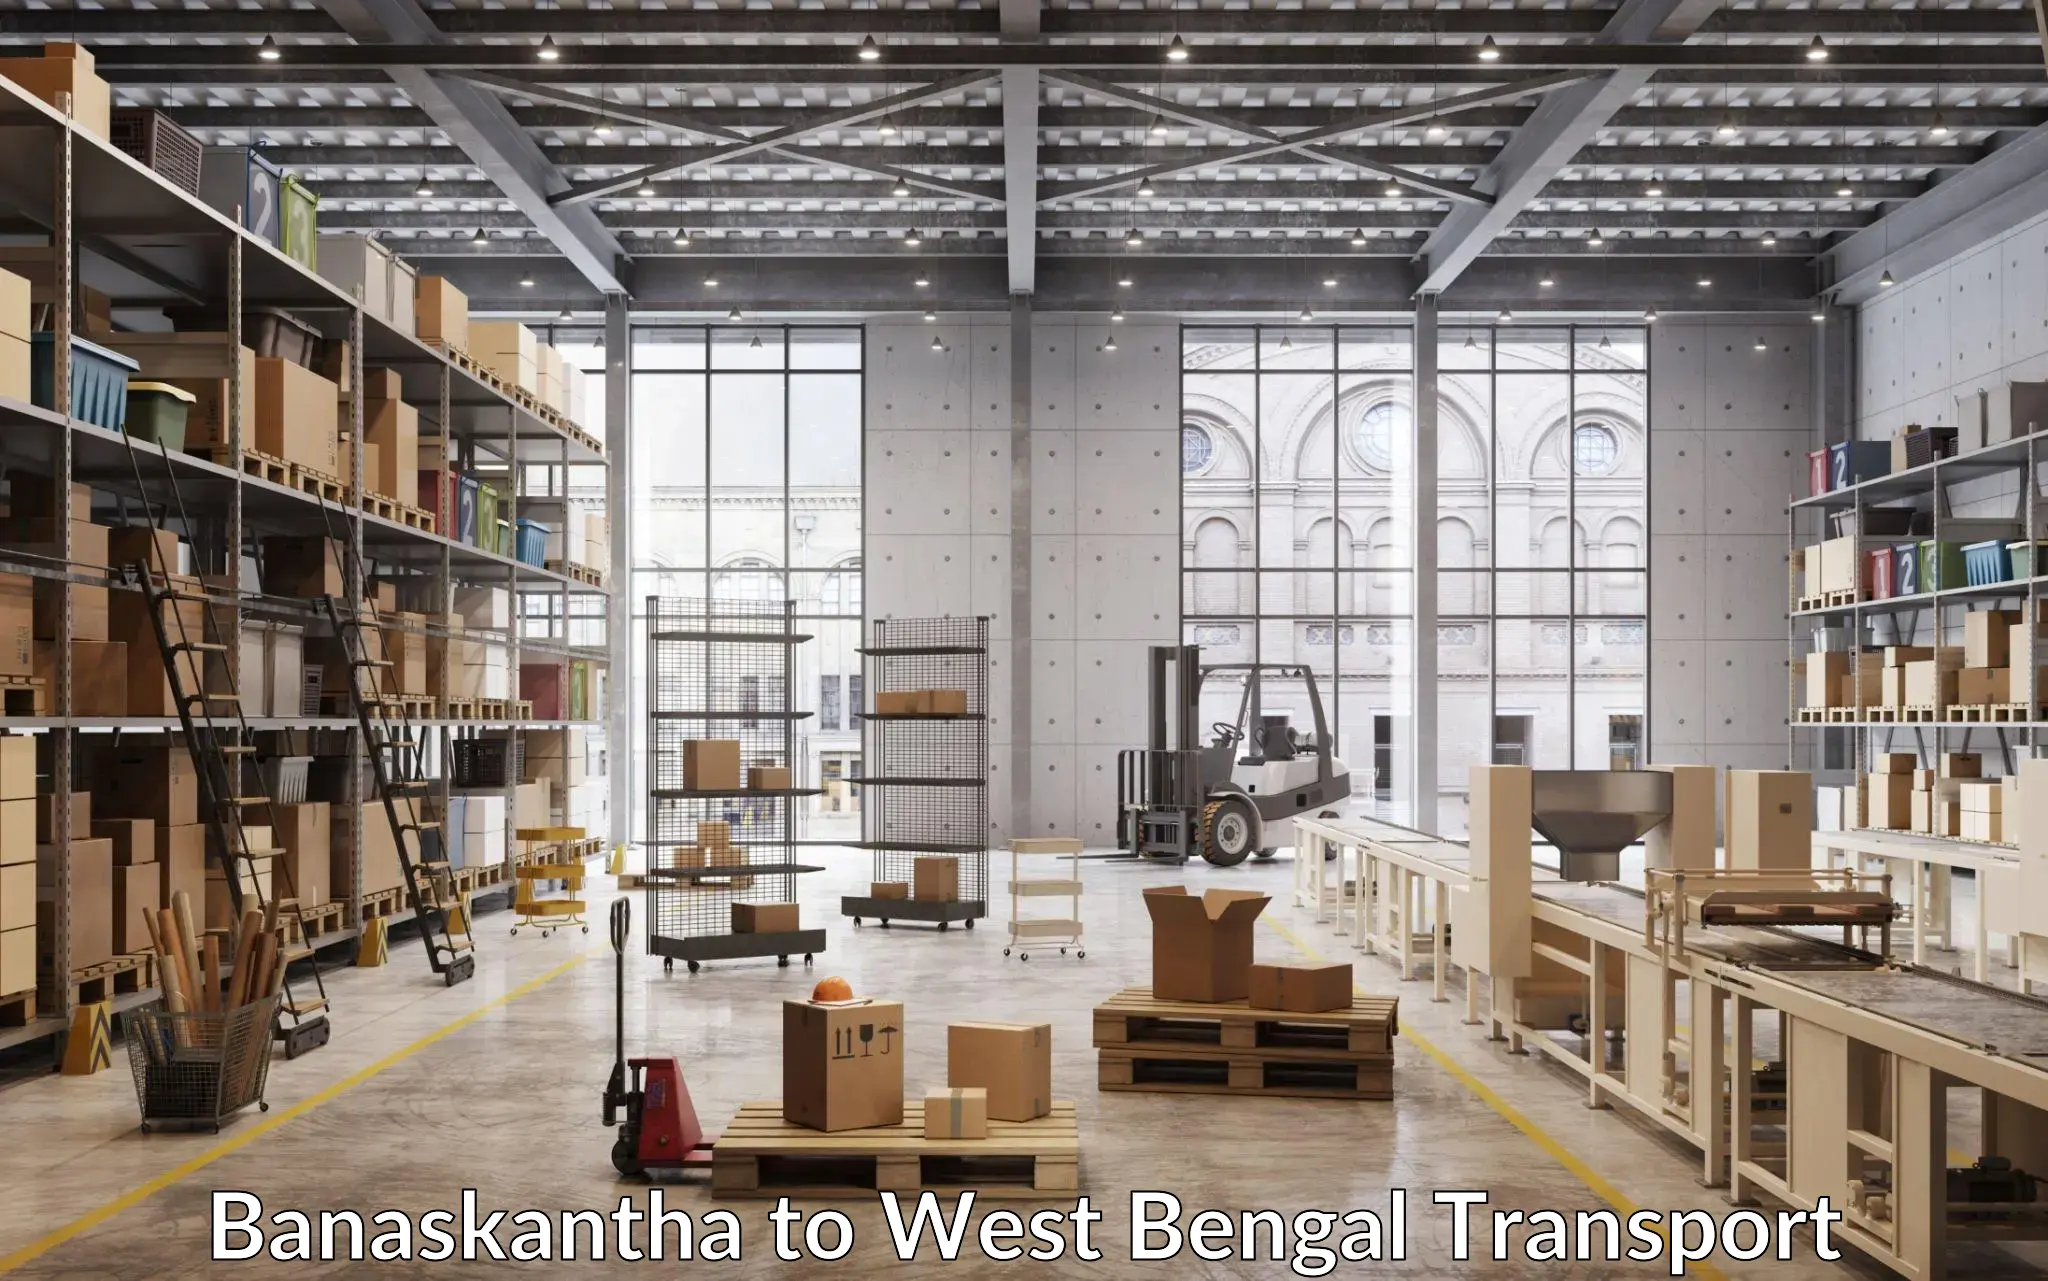 Truck transport companies in India Banaskantha to Nakashipara